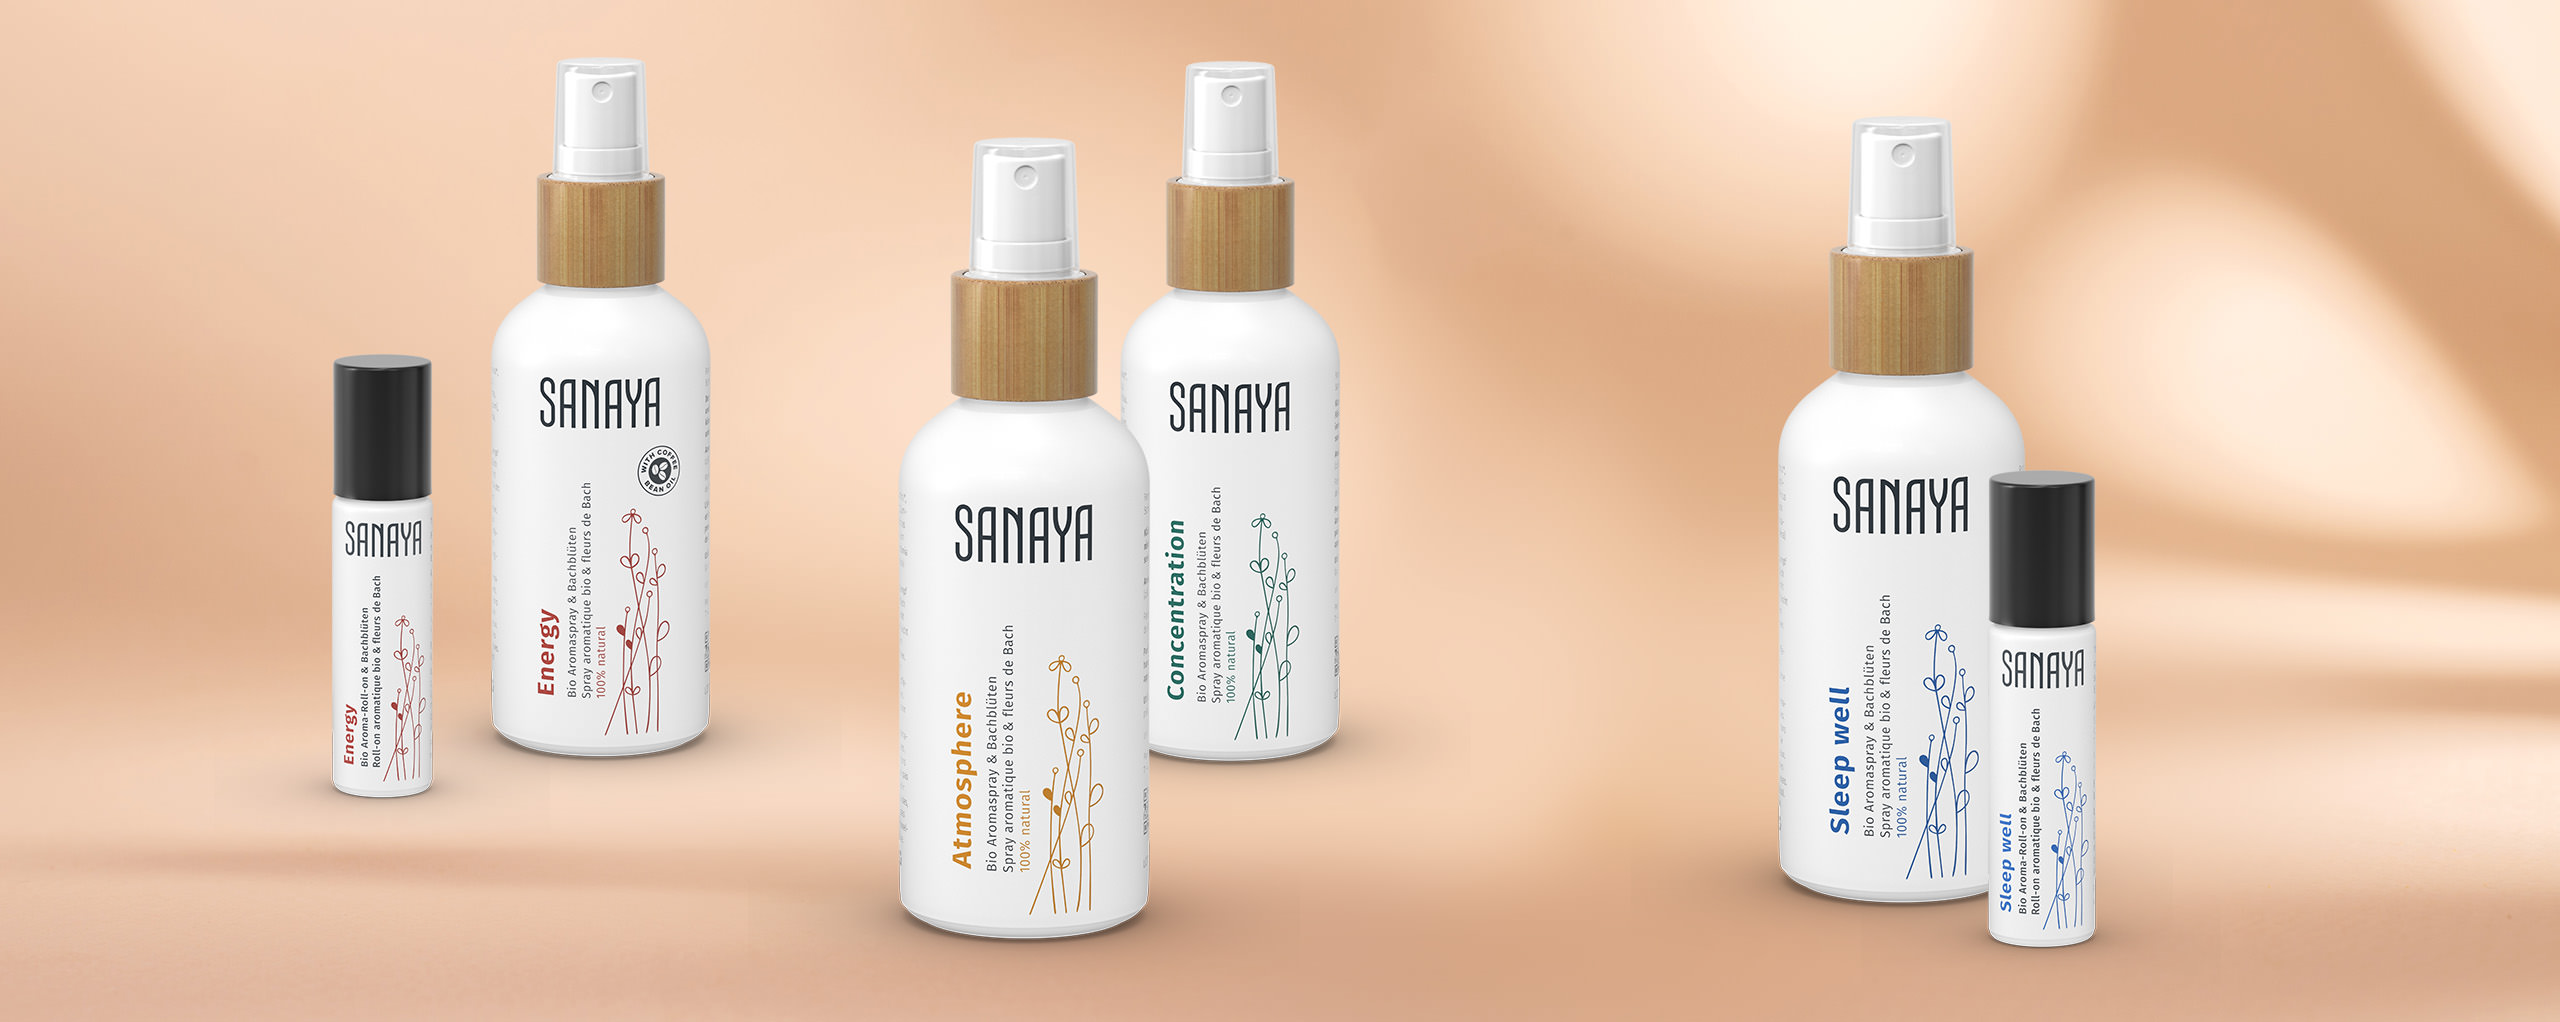 Sanaya ist exklusiv in der Schweiz erhältlich